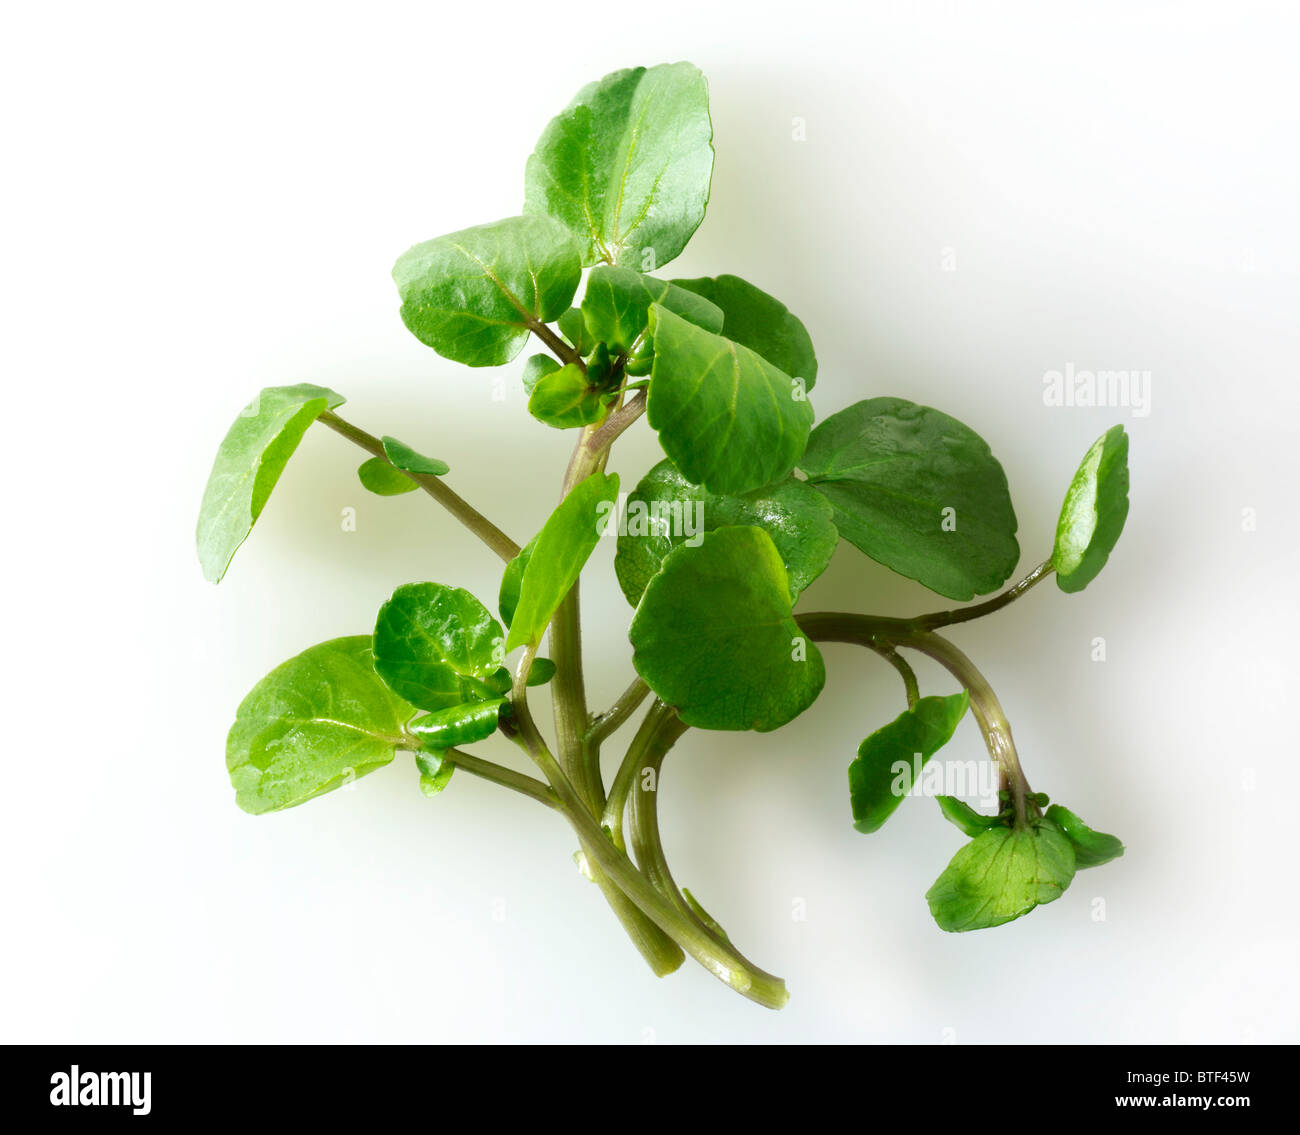 Frische Kresse Blätter Stockfotografie - Alamy